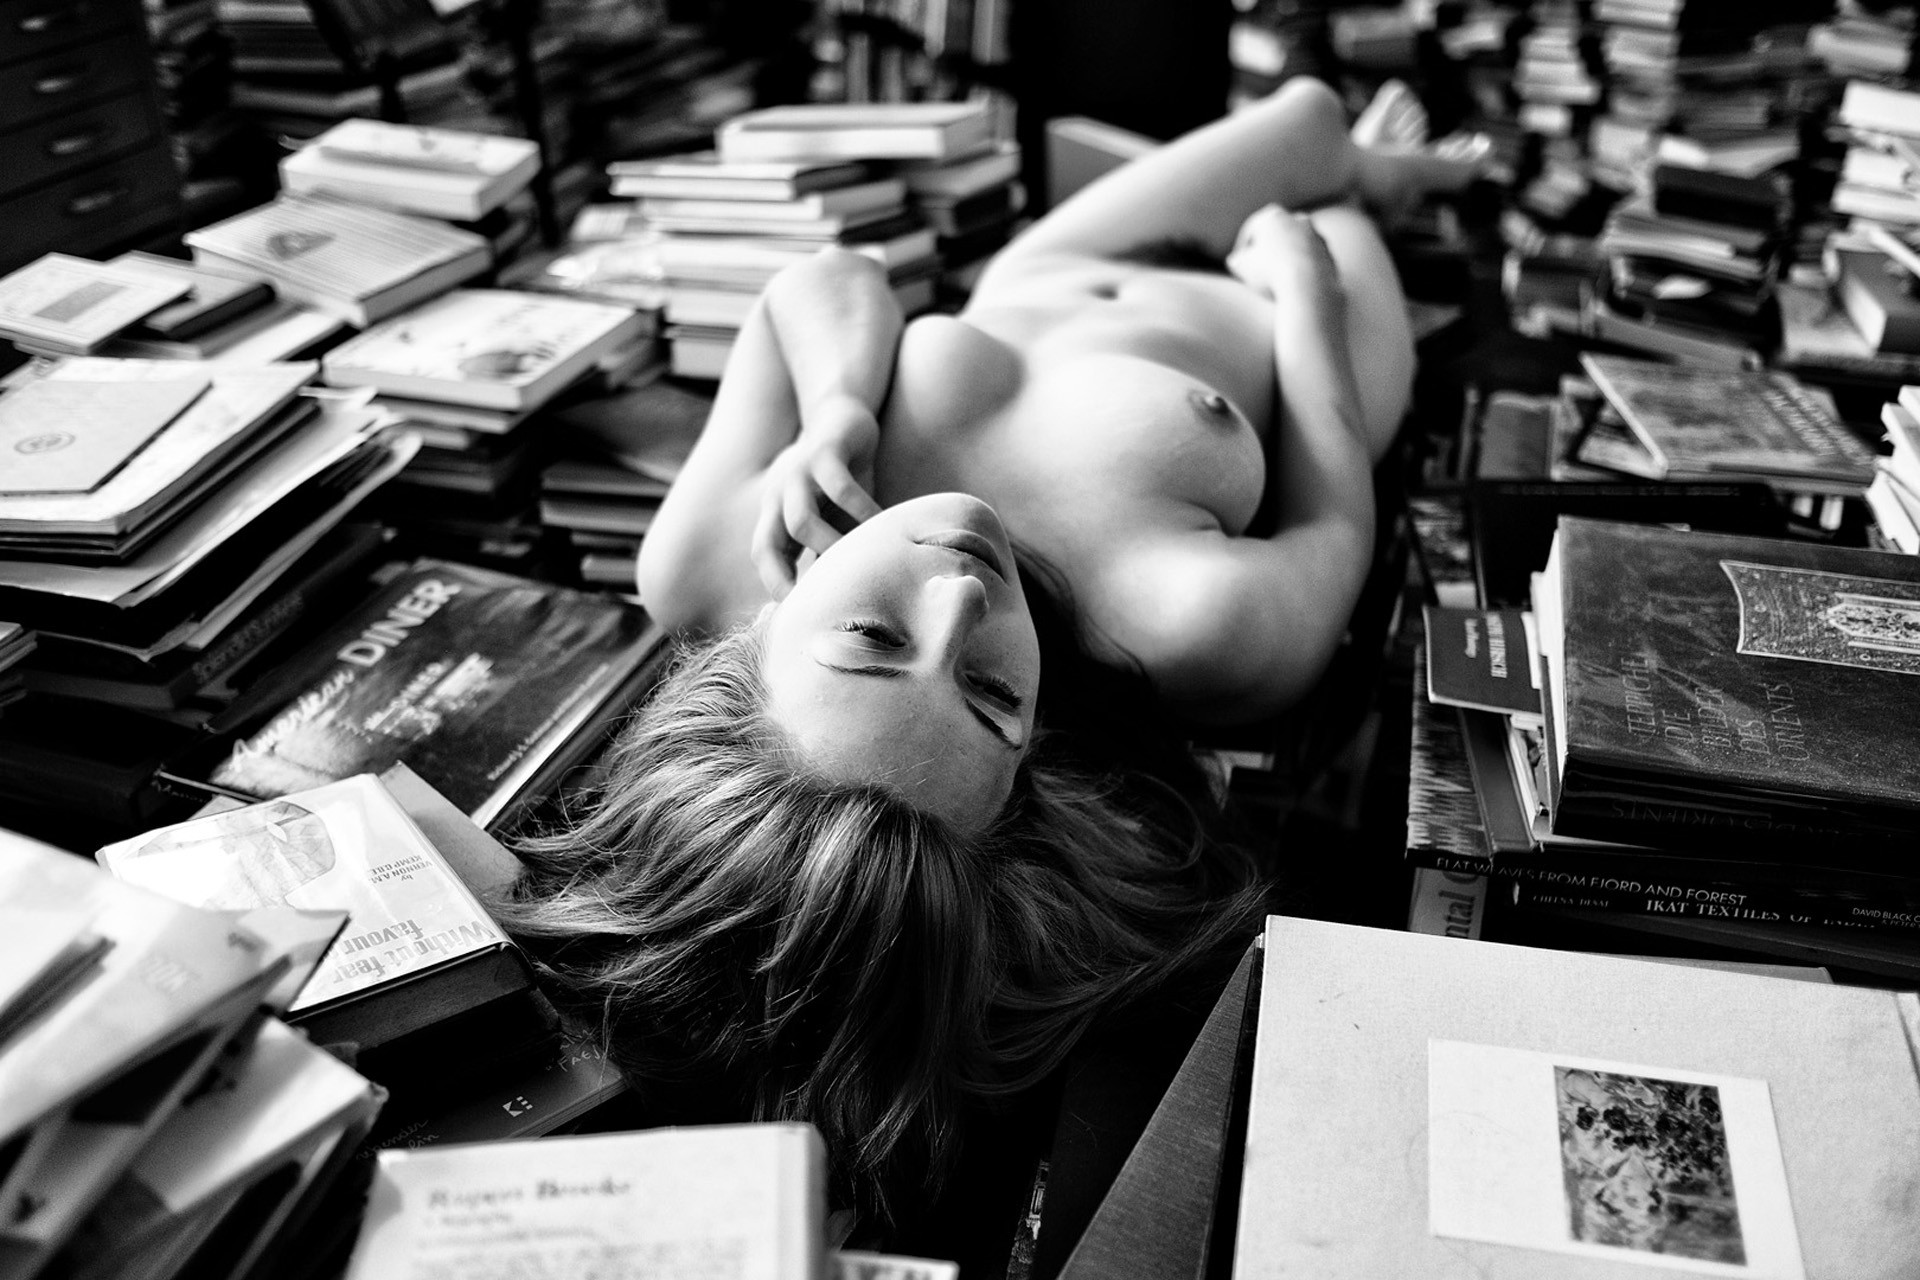 Photographie de nu artistique en noir et blanc, dans une bibliothèque.